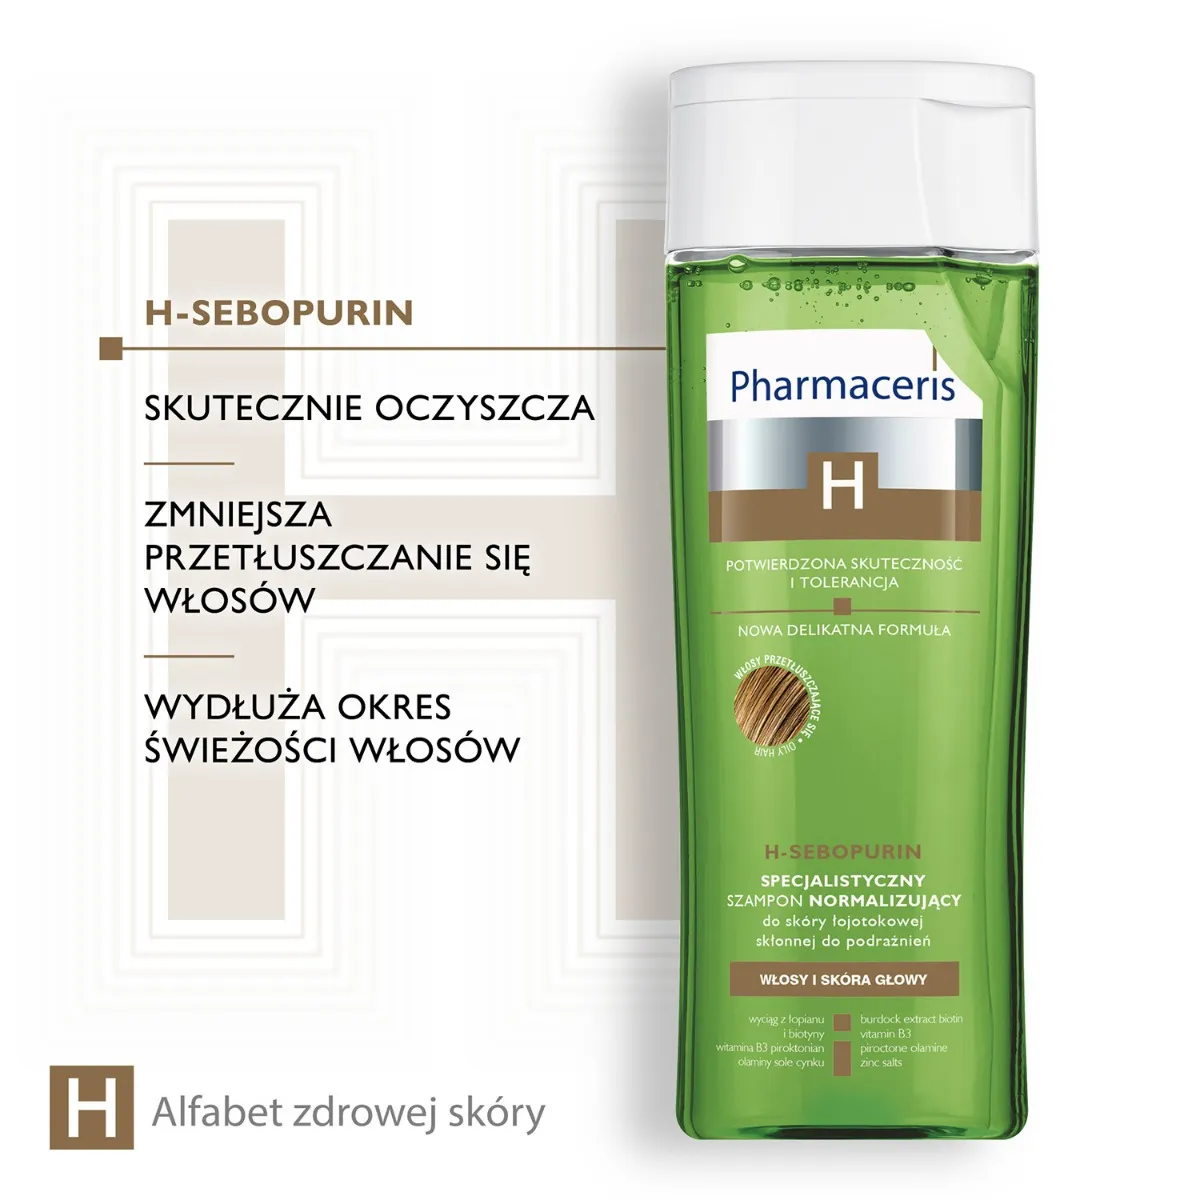 Pharmaceris H-Sebopurin, specjalistyczny szampon do włosów, 250 ml 